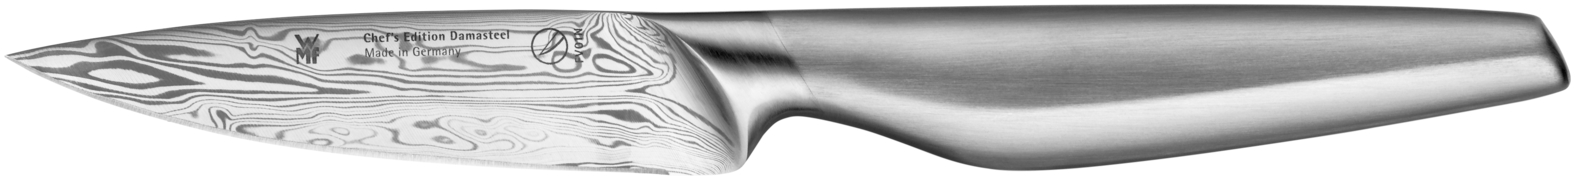 Универсальный нож Chef's Edition Damasteel 10см. оголовок для скважин универсальный